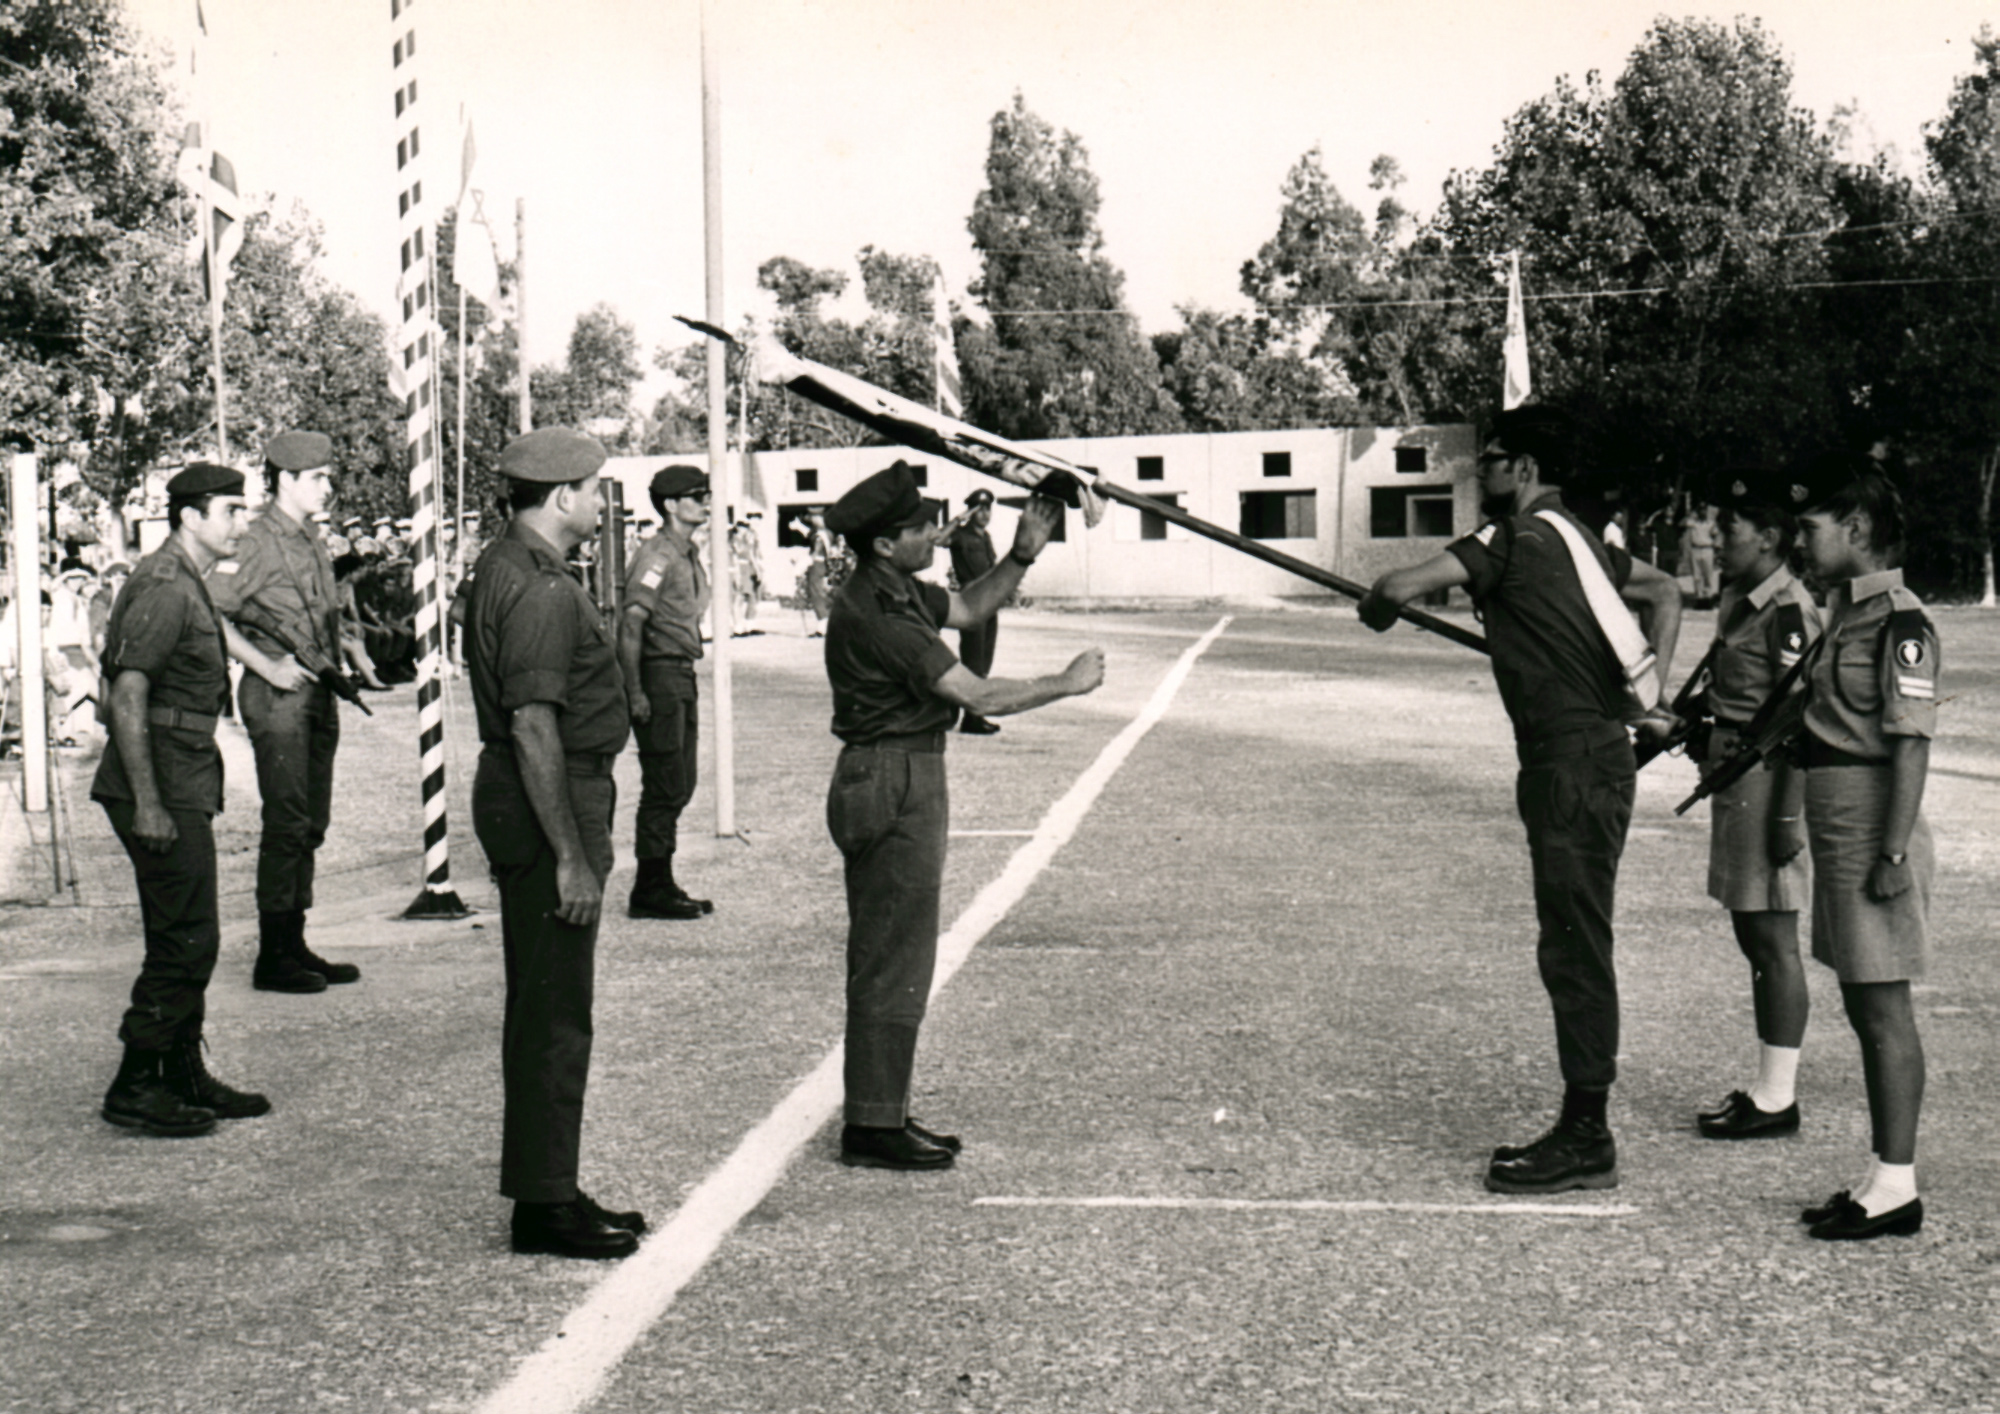 יוני 1969 – מחנה 477 בגלילות ראש אמ"ן אלוף אהרון יריב ומפקד פה"ד אל"מ נתן גרוסמן בטקס החשיפה של דגל הבה"ד .